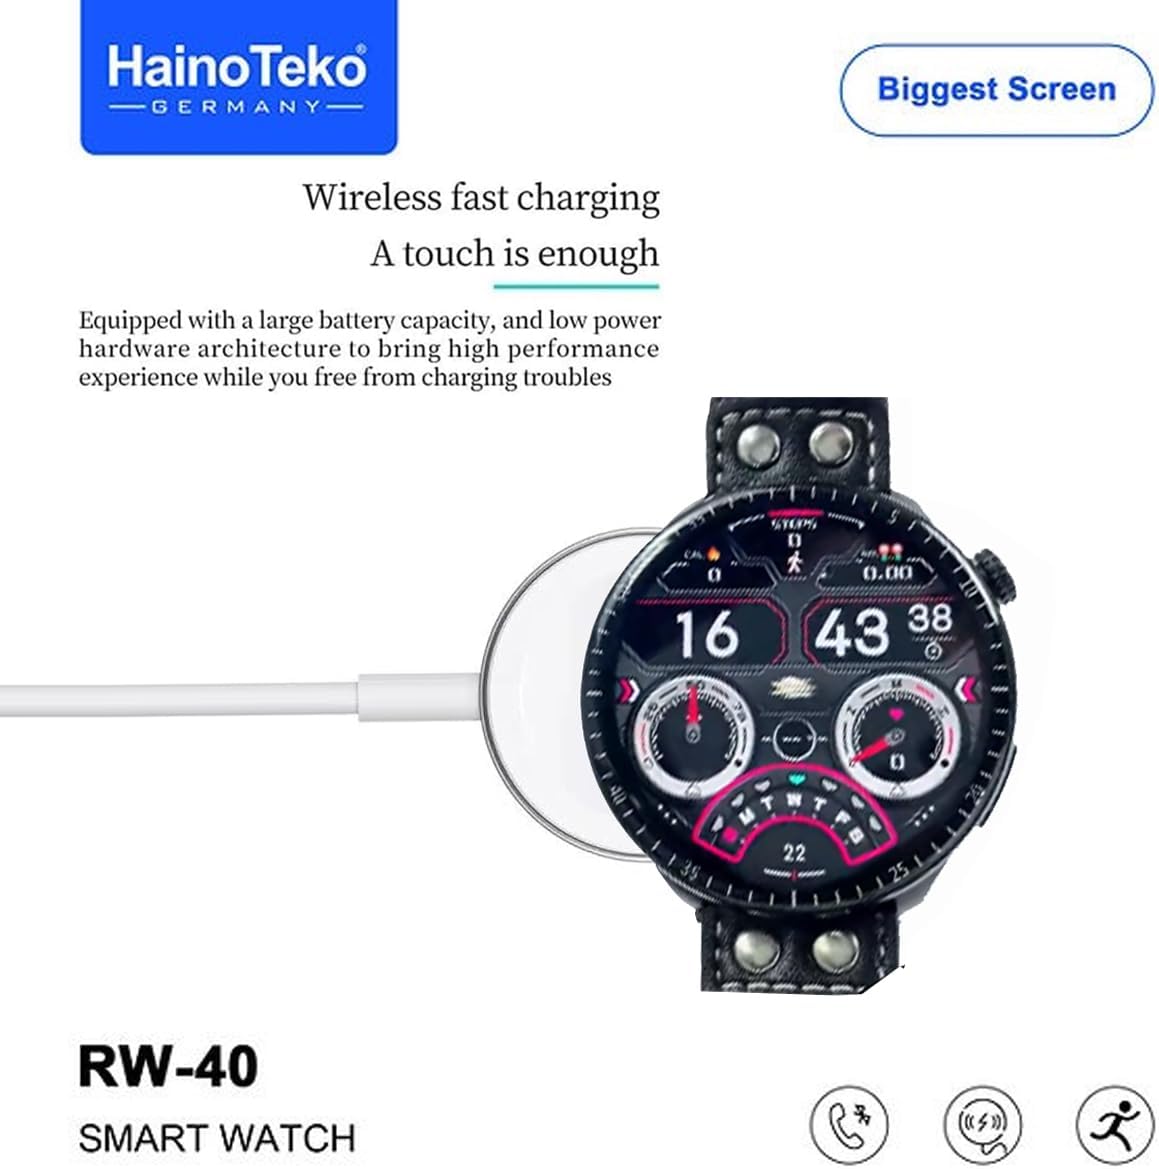 ساعة HainoTeko Germany RW-40 بتصميم عصري ولون أسود